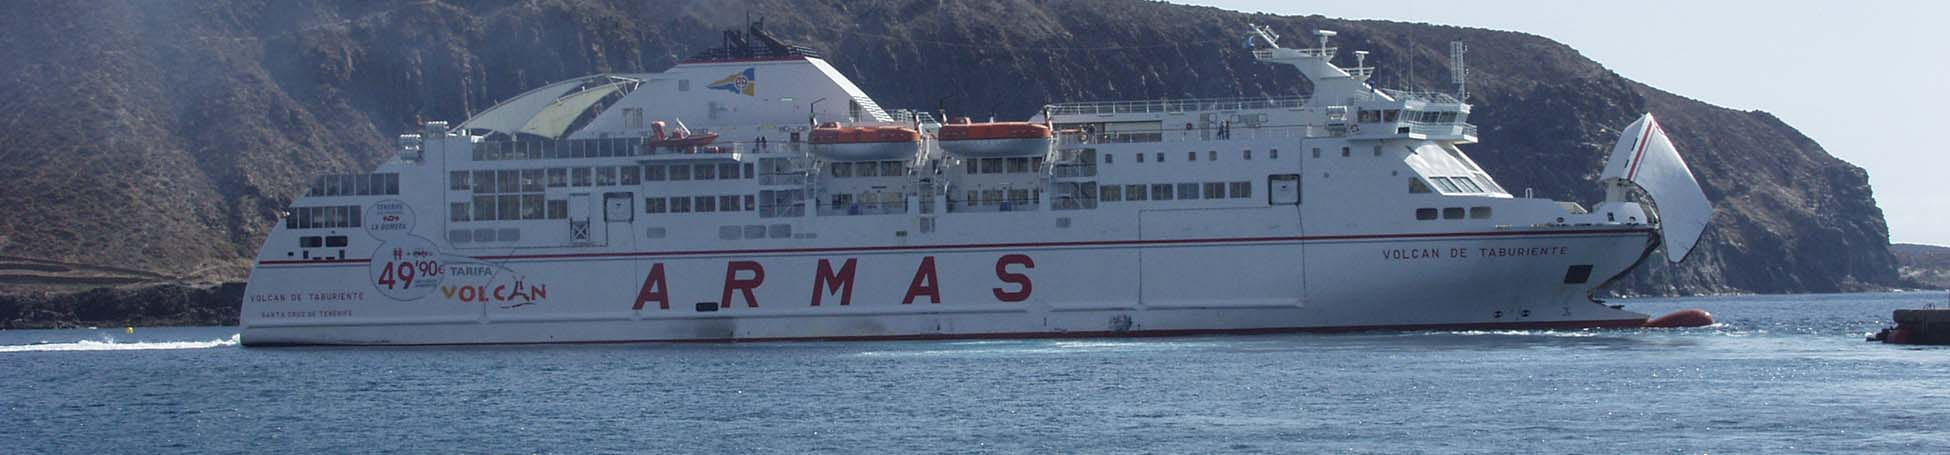 Imatge recurs del port de destinació Almeria per a la ruta en ferry Orà - Almeria